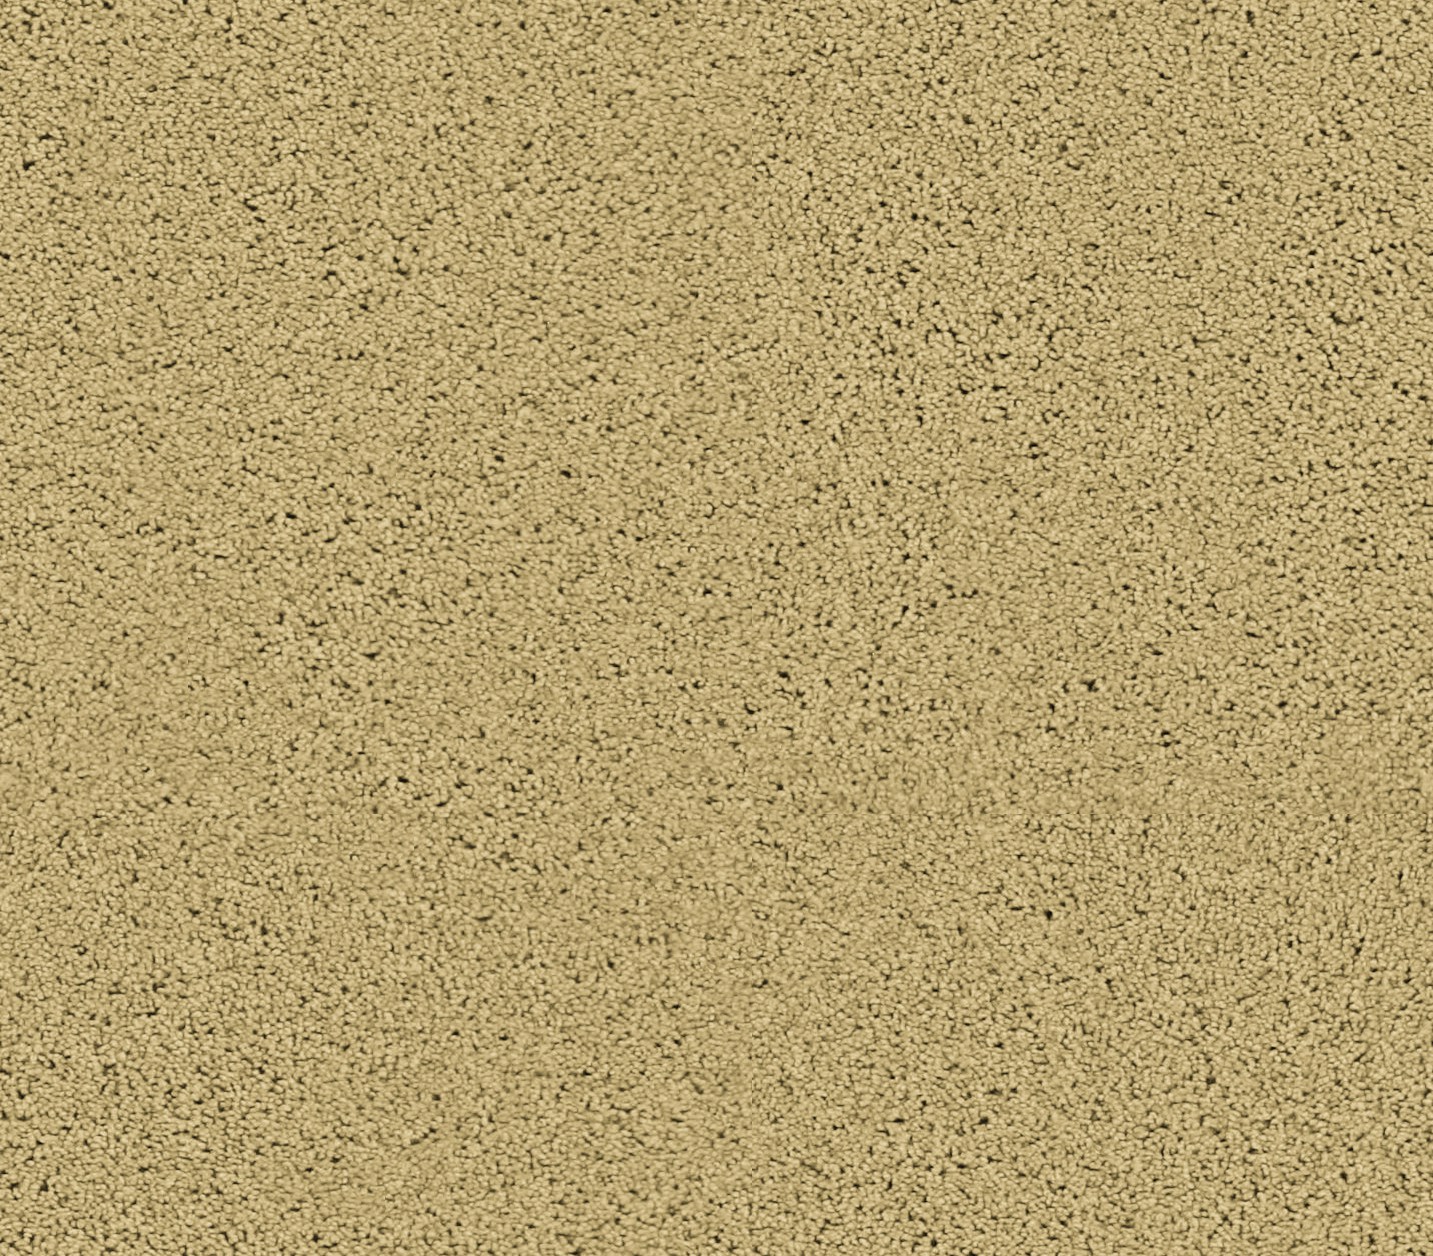 Mohawk Area Rugs X Milliken Scattergraph Carpet Tiles Oatmeal Bliss By